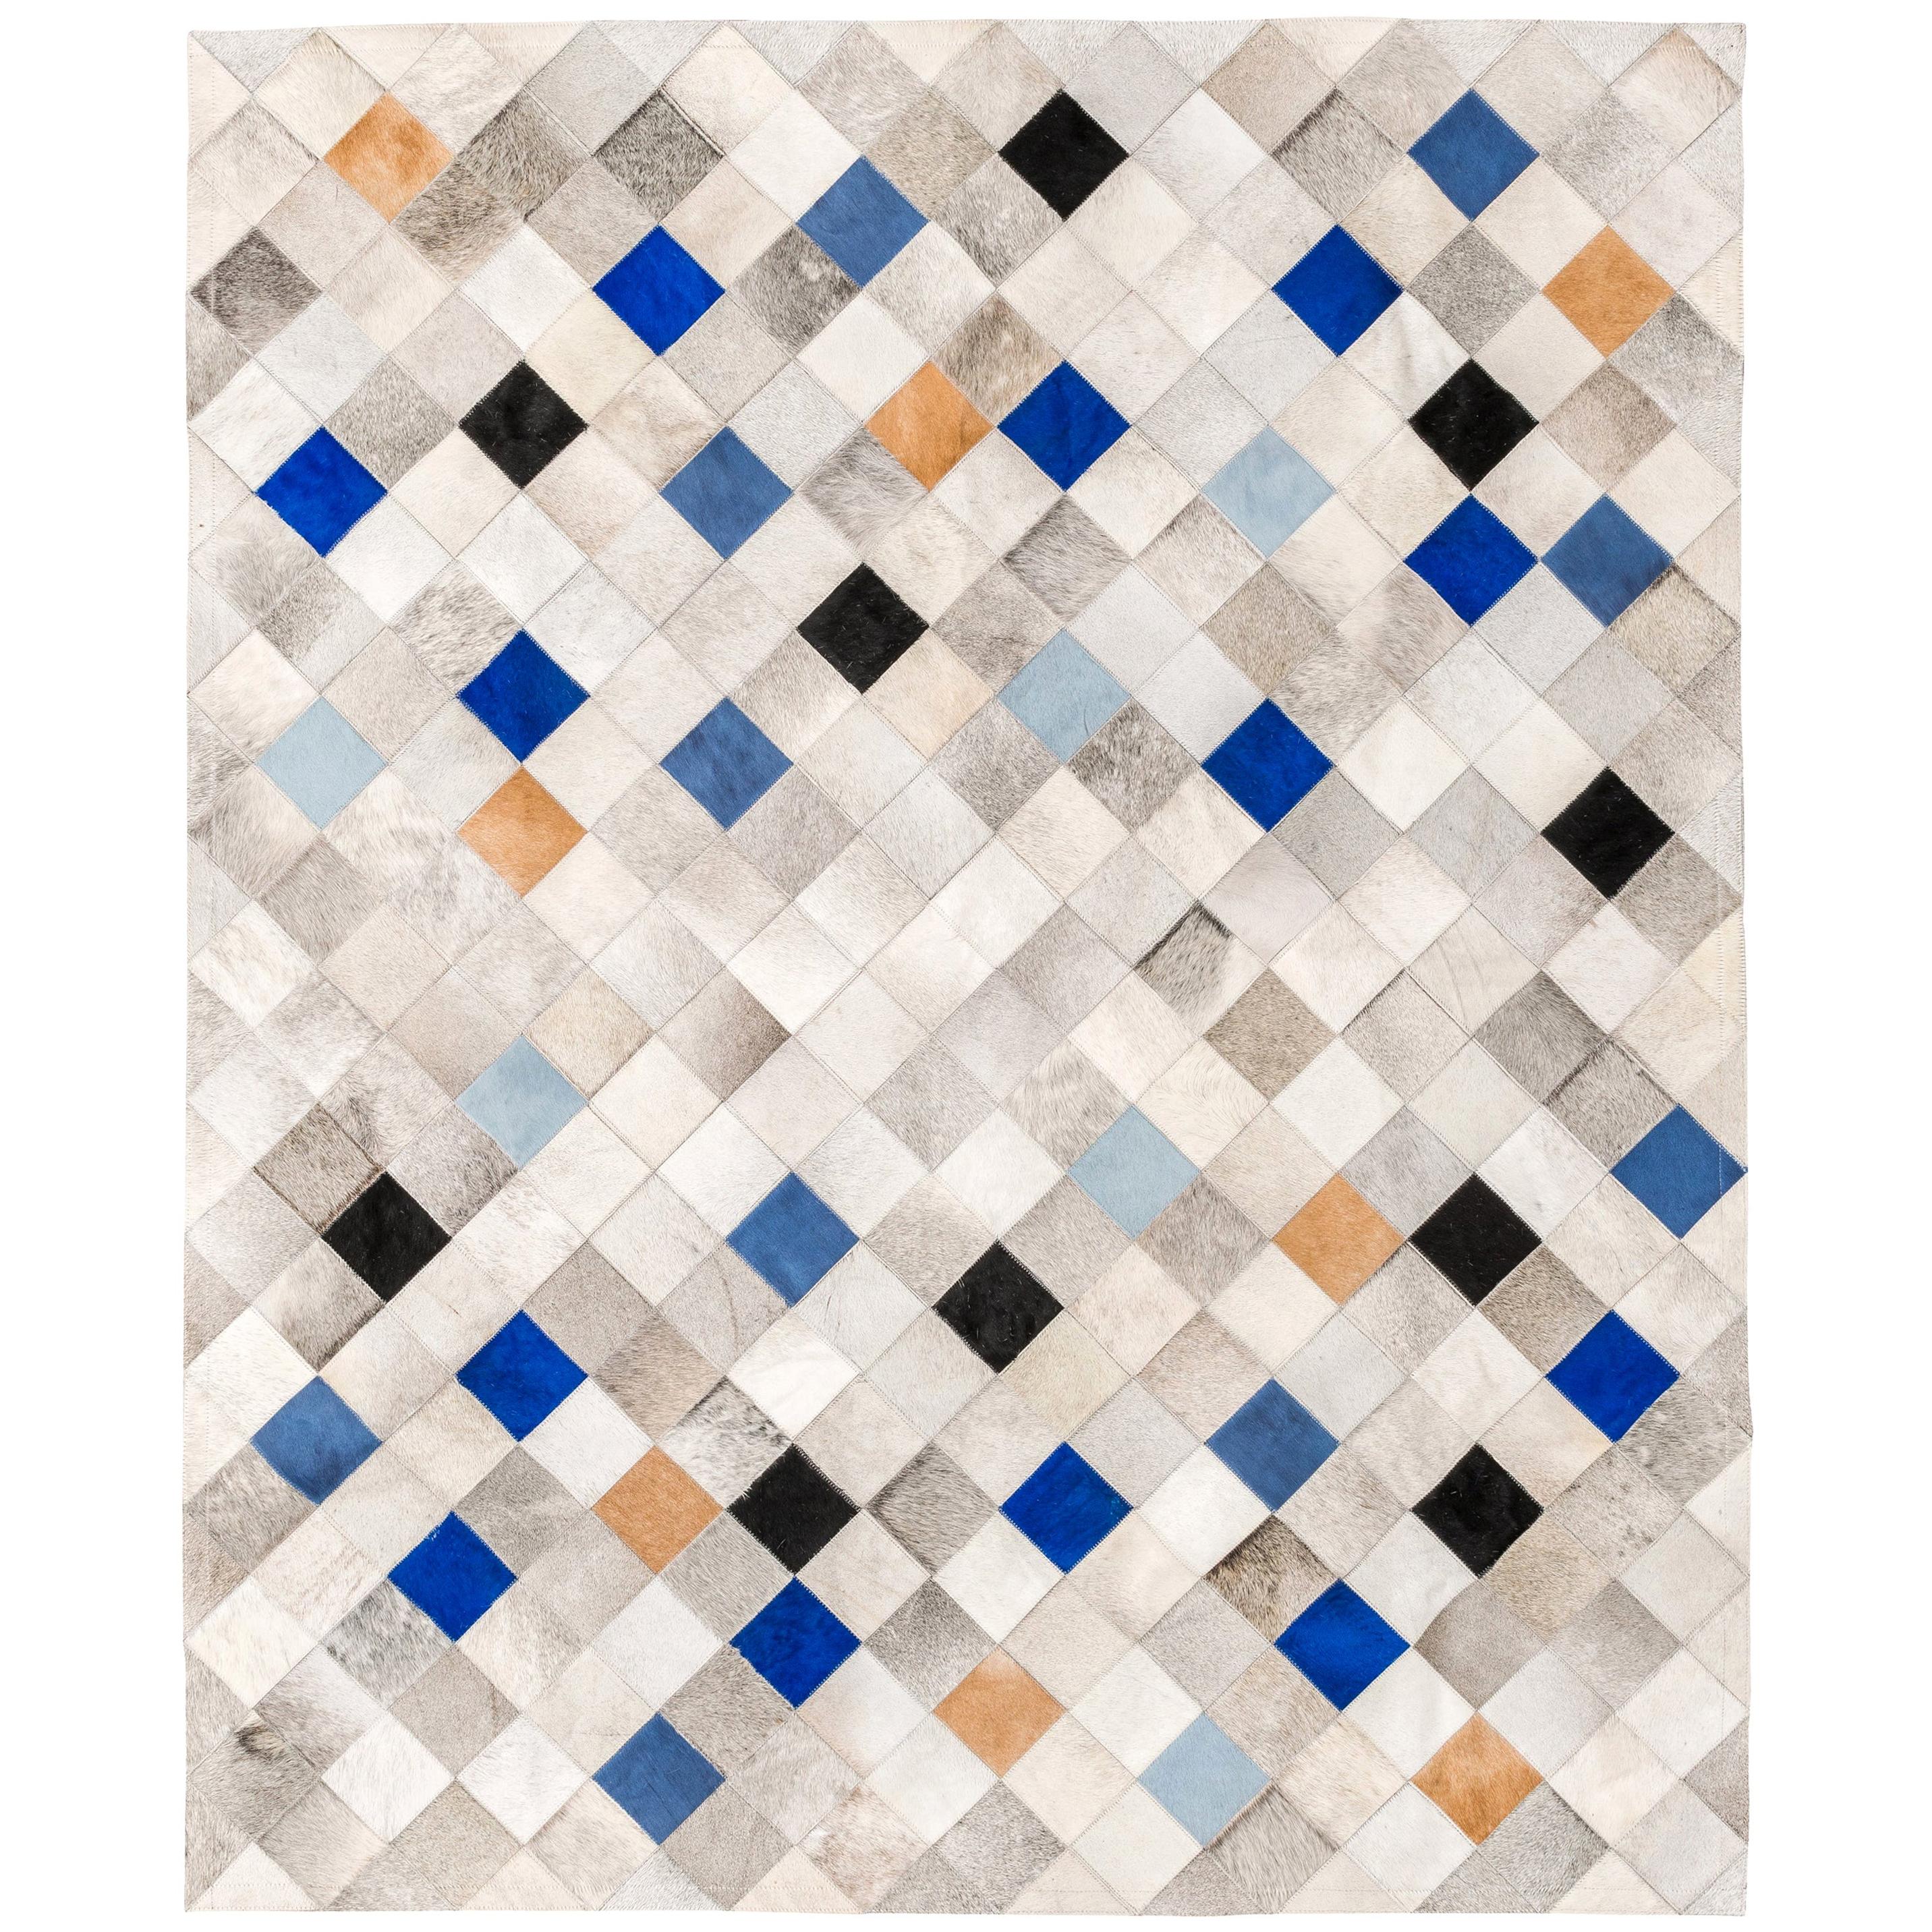 Cowhide-Bodenteppich XX-groß in Grau, Blau und Karamell mit fallenden Quadraten im Angebot